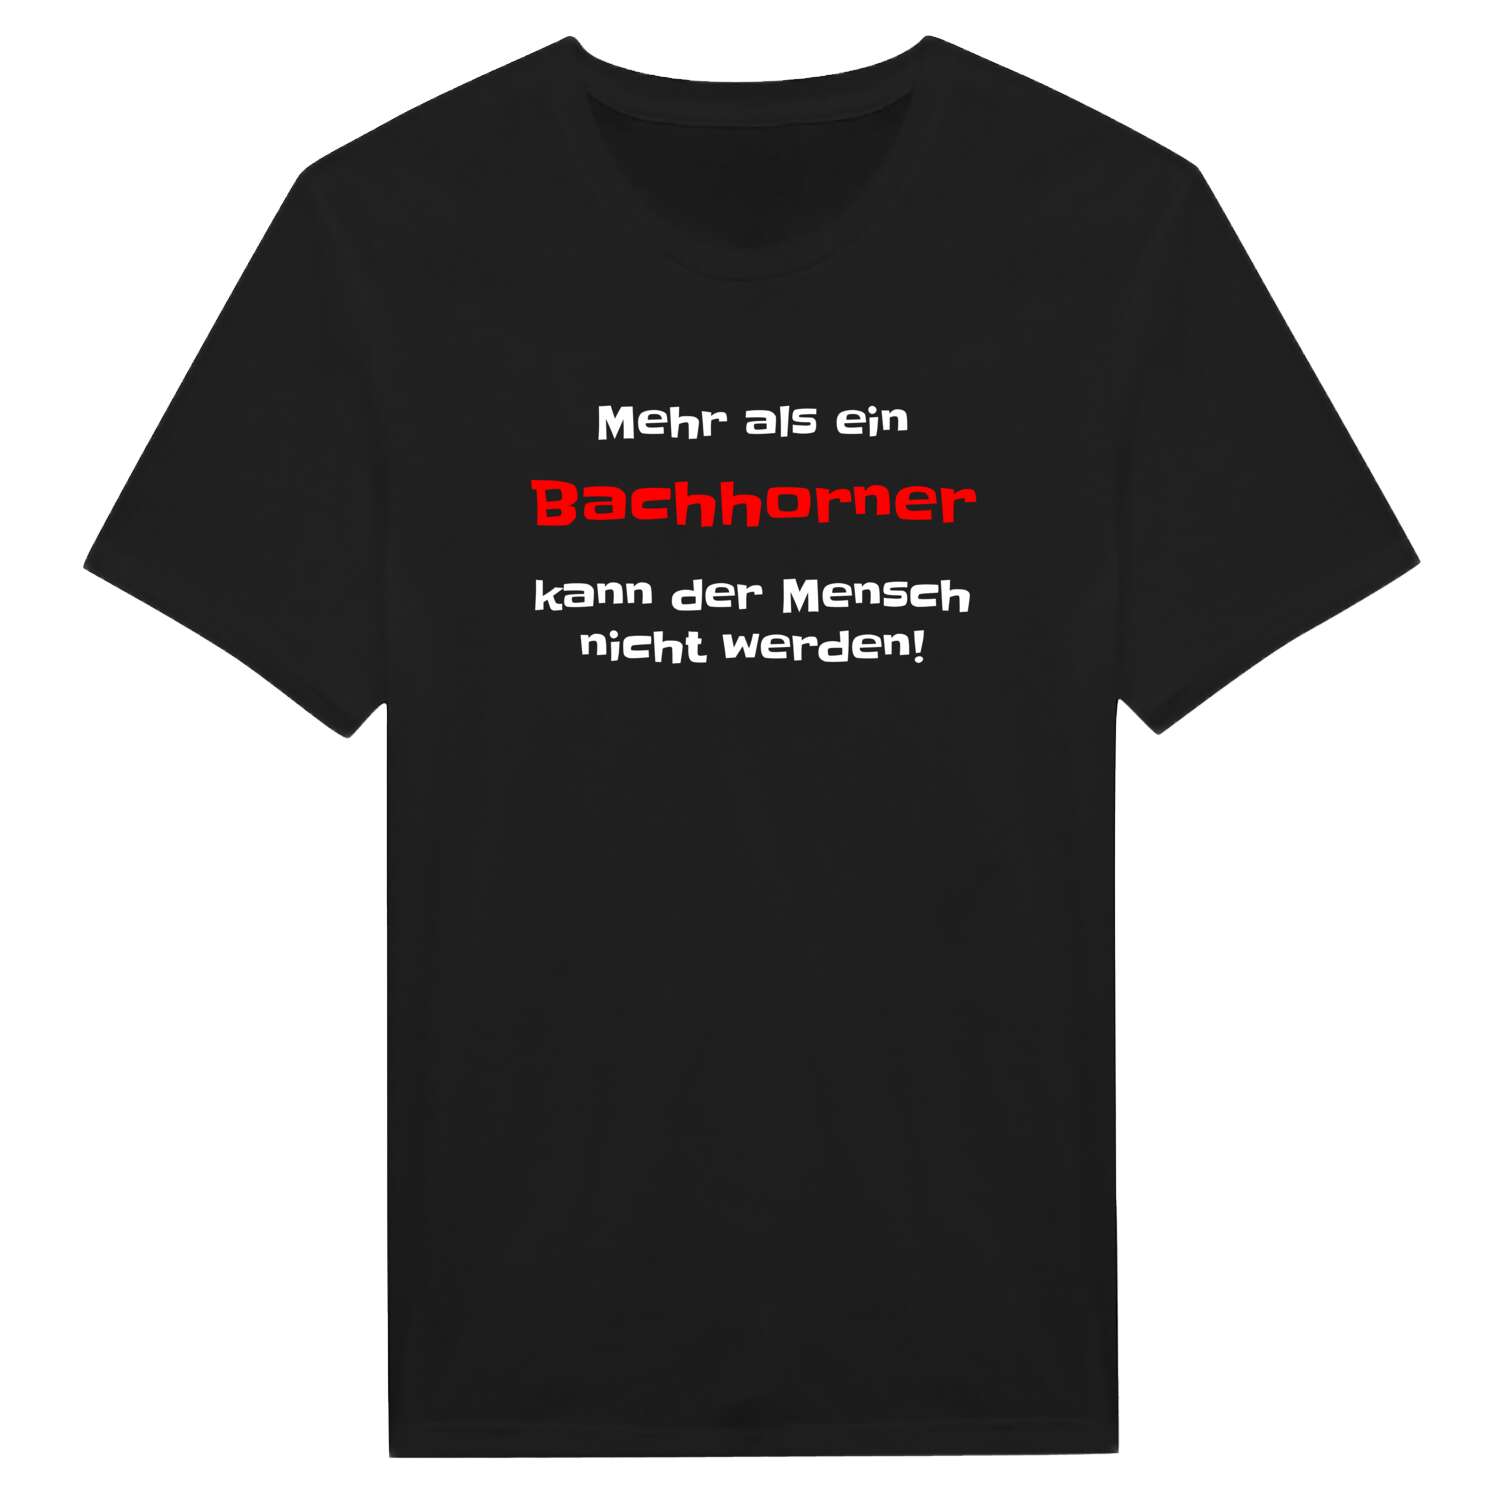 Bachhorn T-Shirt »Mehr als ein«